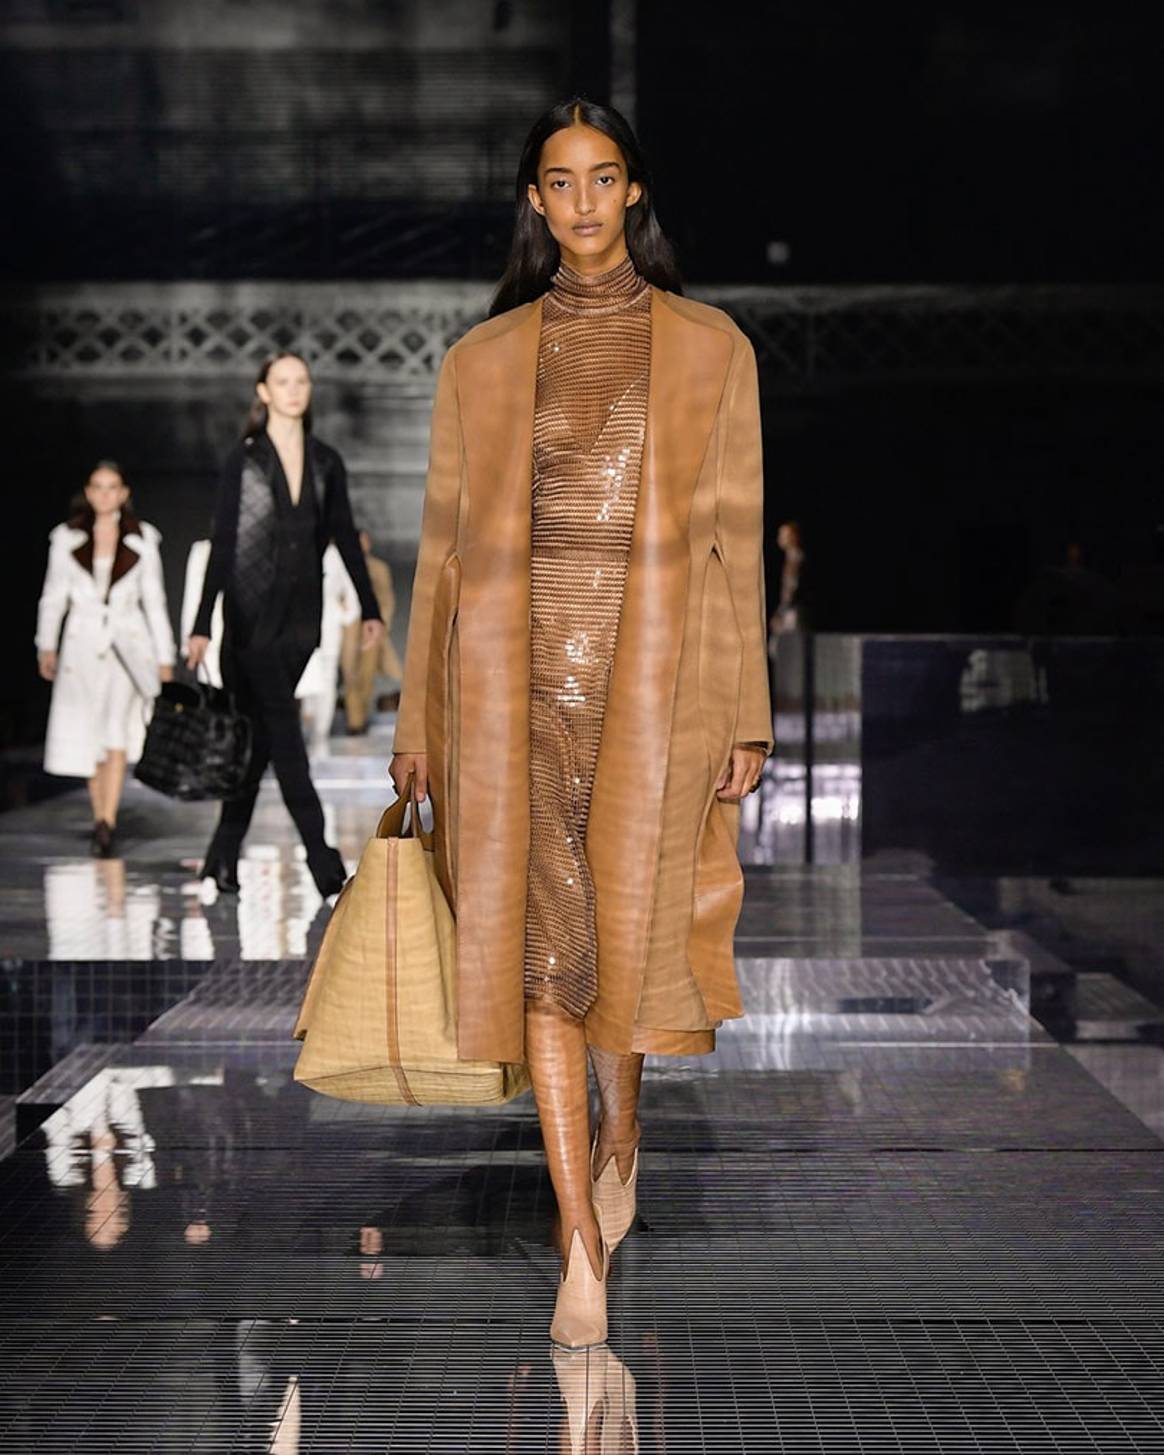 Personal y rompedora: Riccardo Tisci conquista la Semana de la Moda de Londres